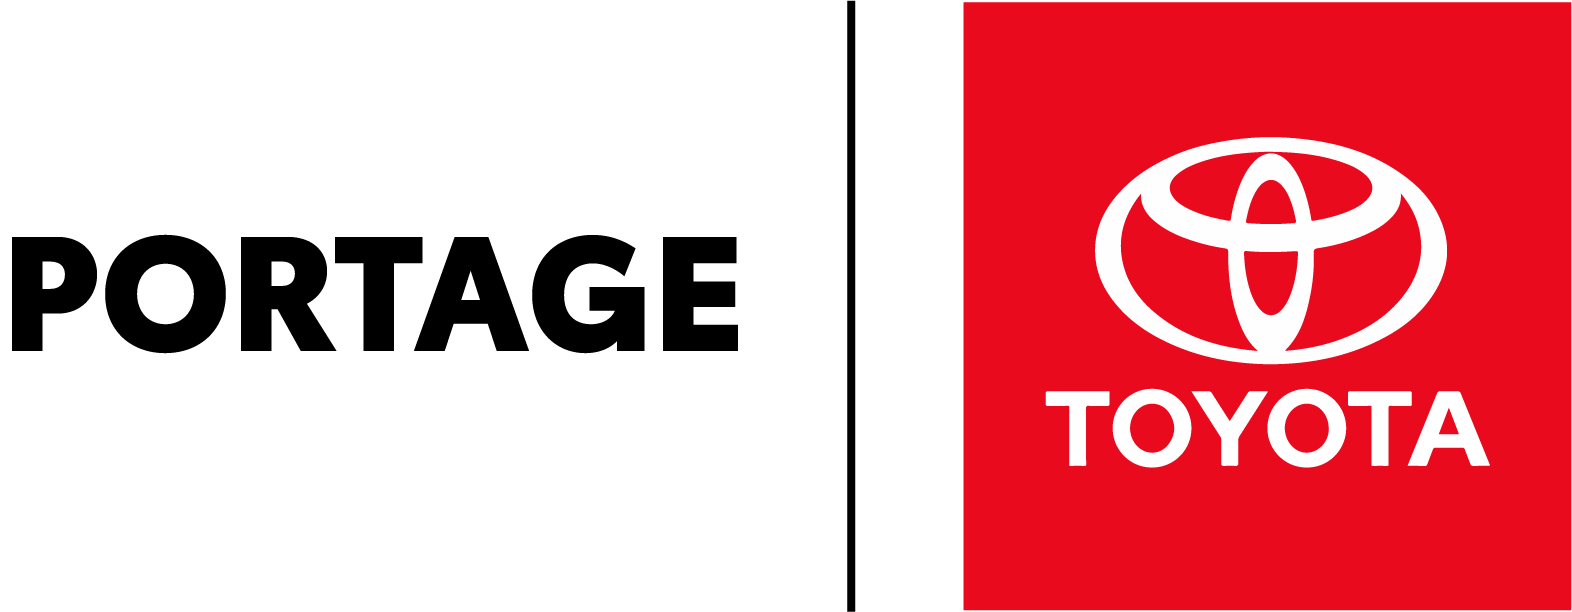 Portage Toyota logo